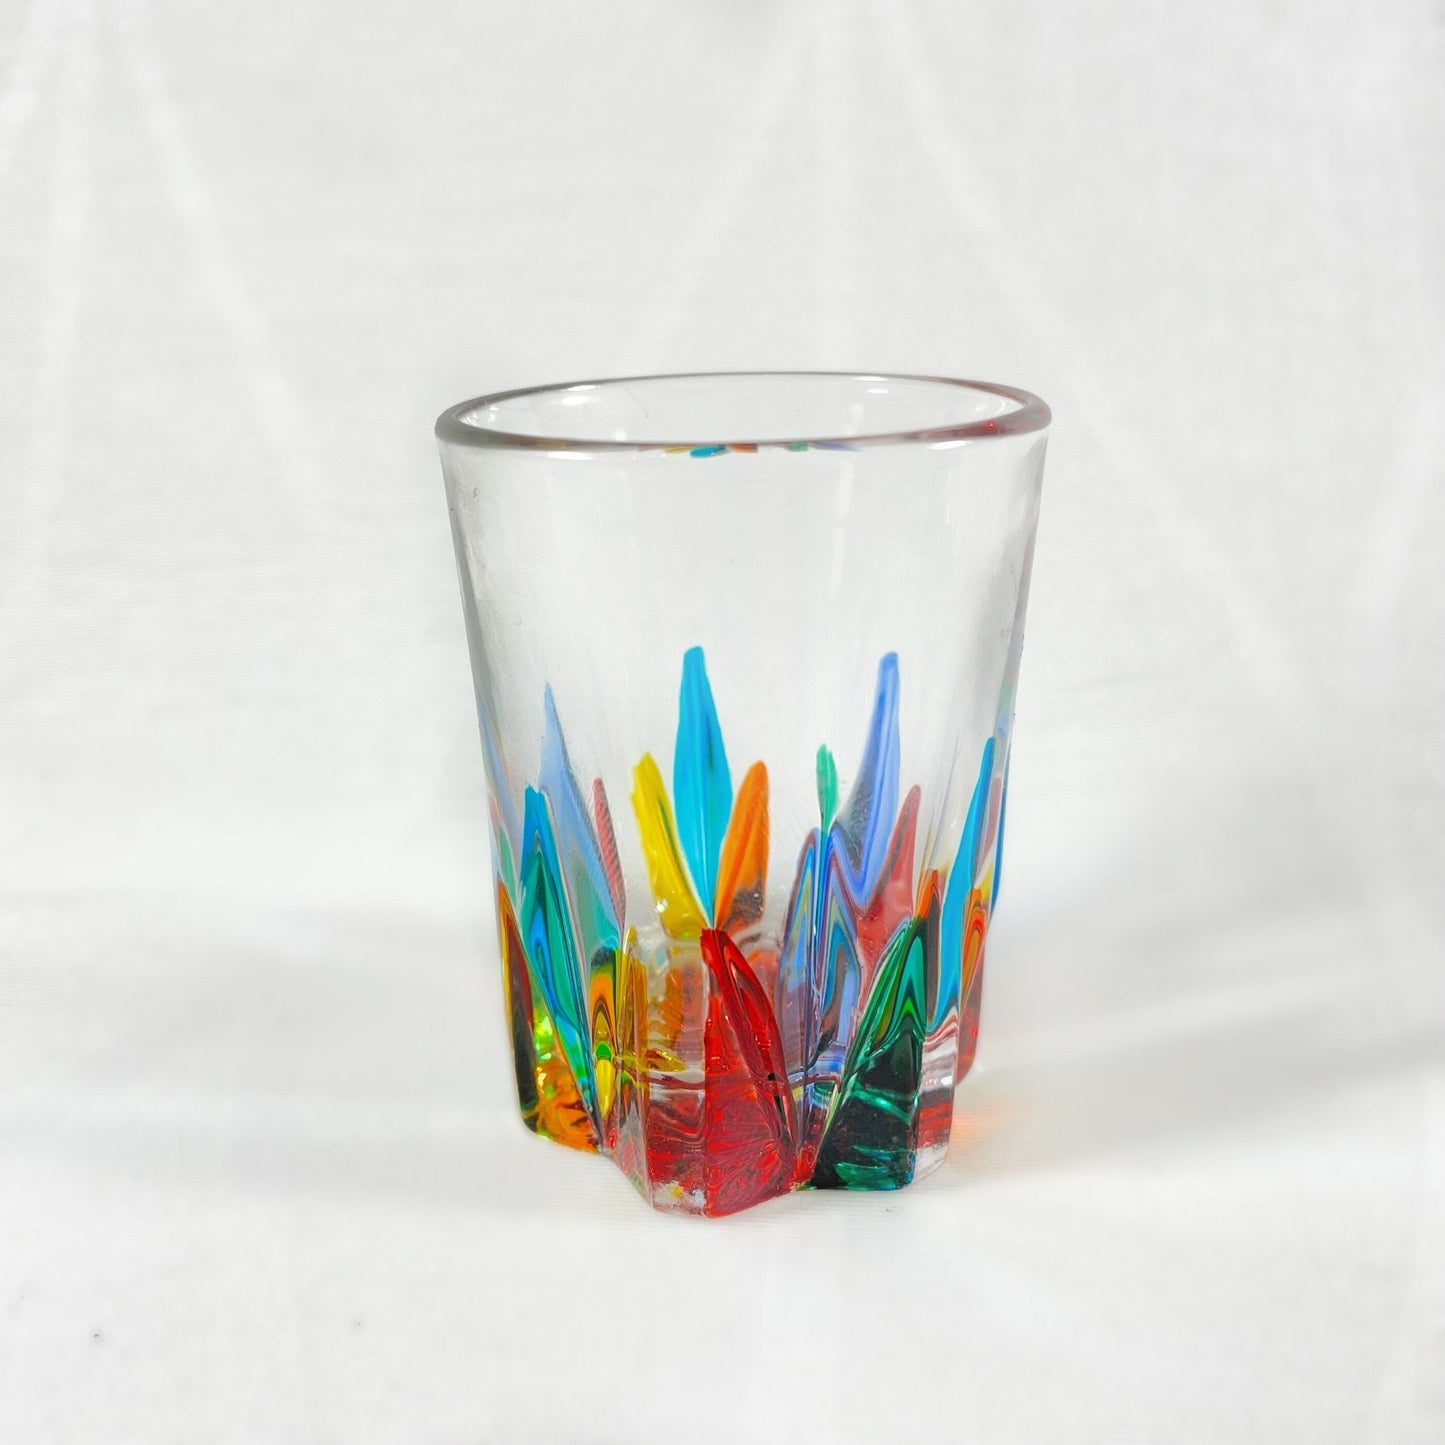 Venetian Glass Shot Glass - Handmade in Italy, Colorful Murano Glass